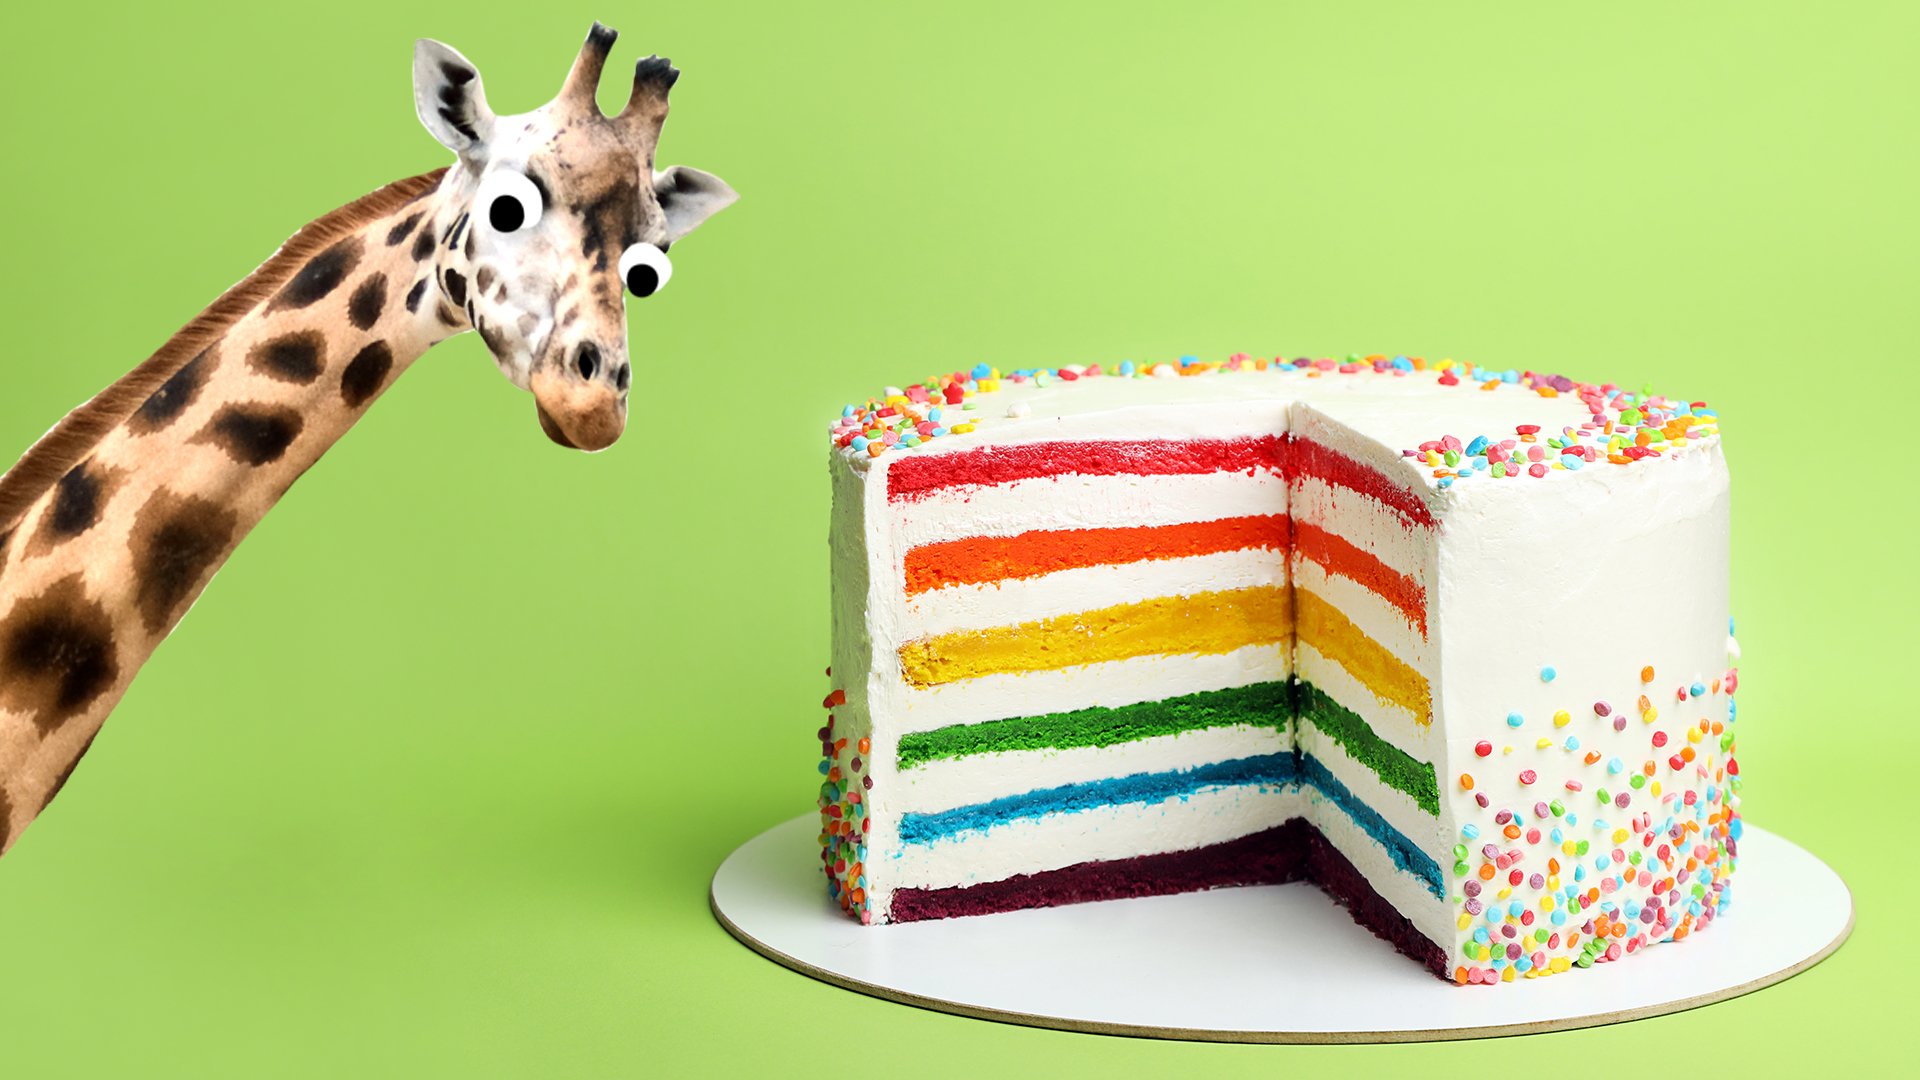 A giraffe with a rainbow cake